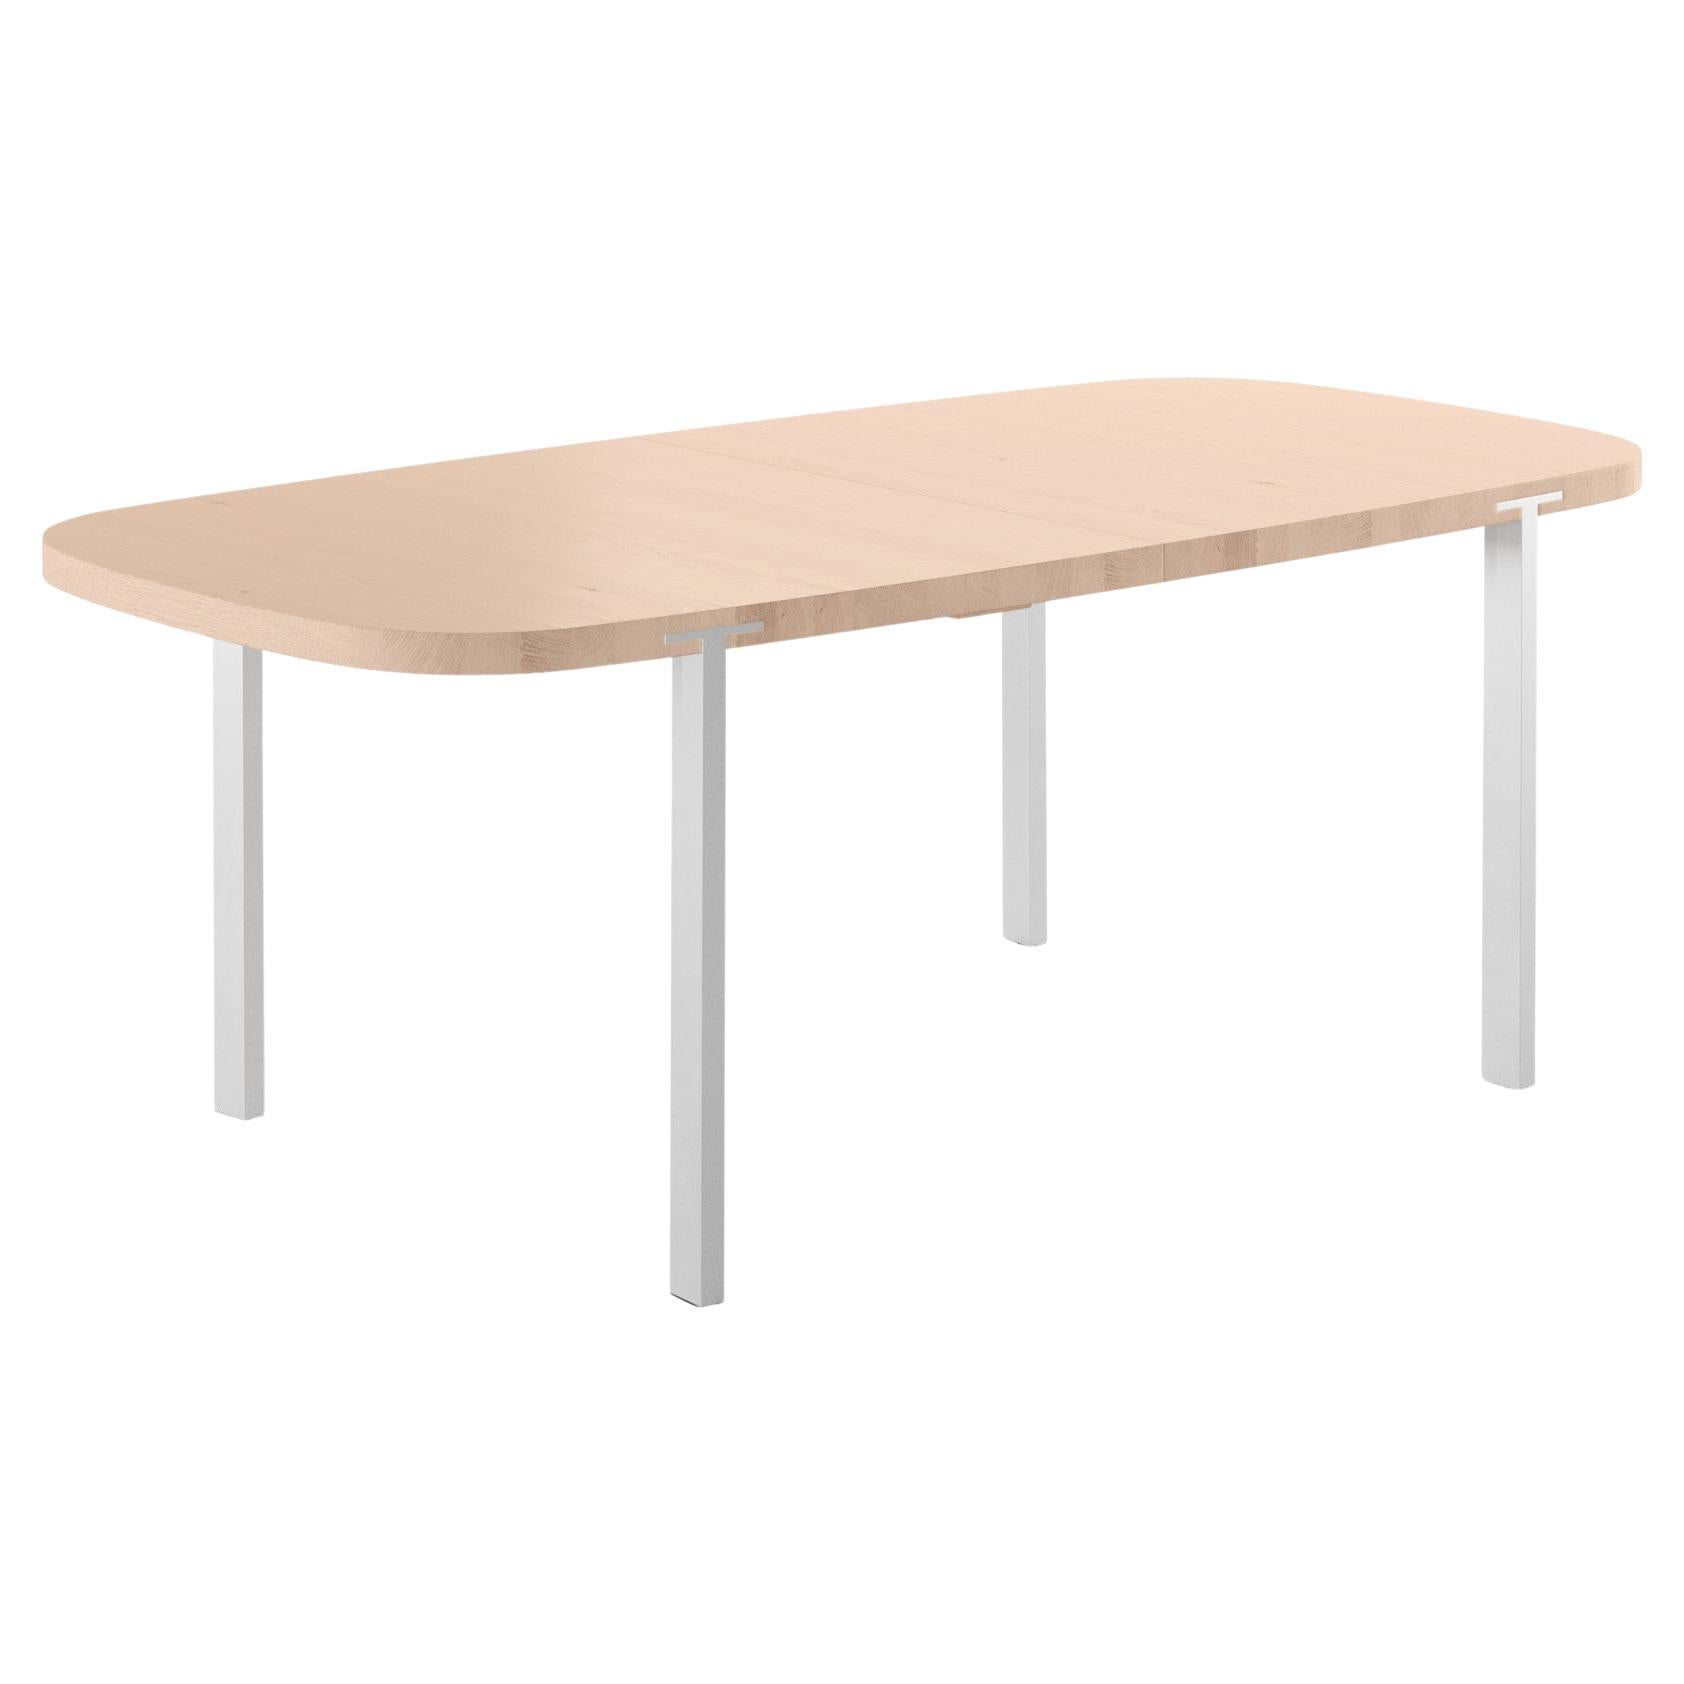 GM2122 Super Ellipse Table, Oak - Design by Nissen & Gehl MDD For Sale